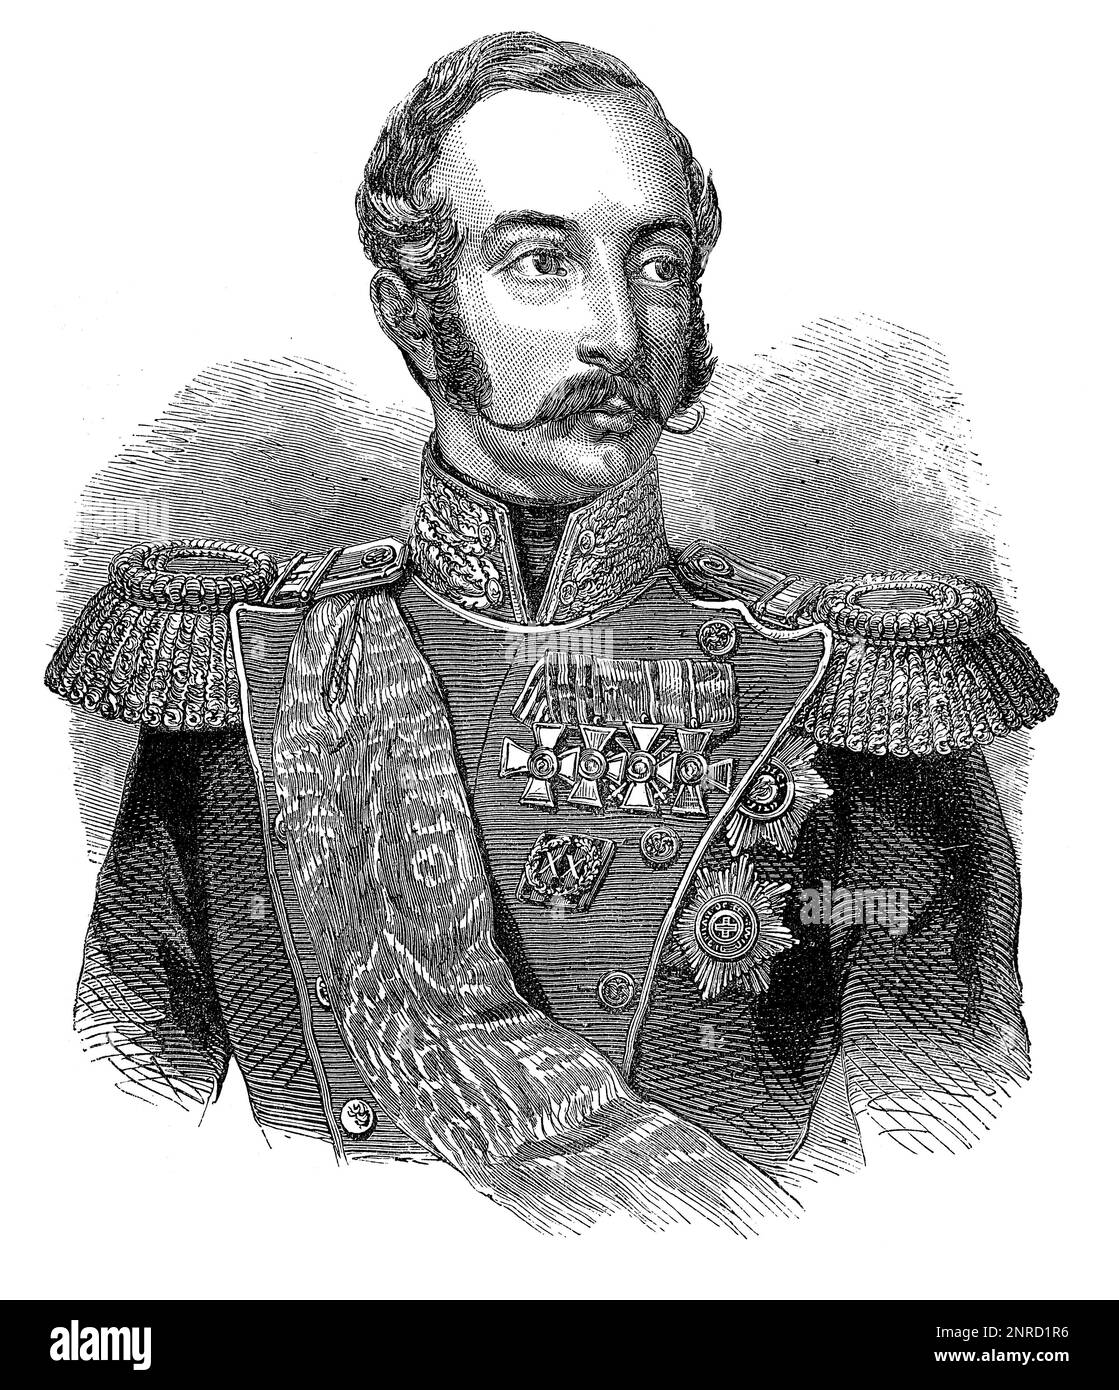 Portrait d'Alexandre II de Russie, empereur de Russie, roi de Pologne et grand-duc de Finlande du 2 mars 1855 jusqu'à son assassinat en 1881. Illustration en noir et blanc Banque D'Images